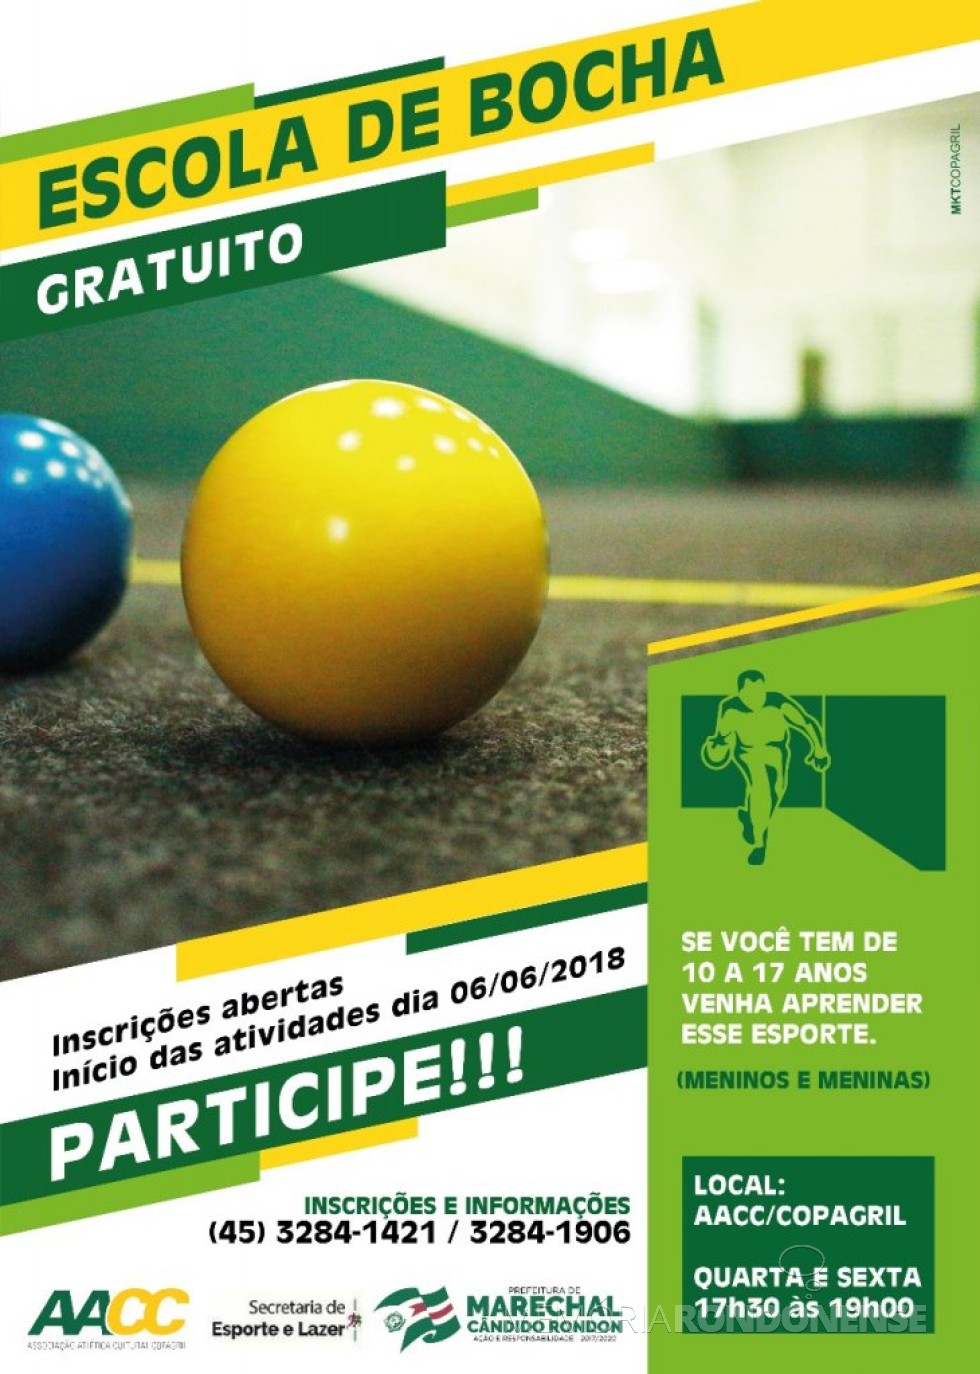 Cartaz-convite para a Escola de Bocha, organizado em Marechal Cândido Rondon. 
Imagem: Imprensa PM-MCR - FOTO 10  - 